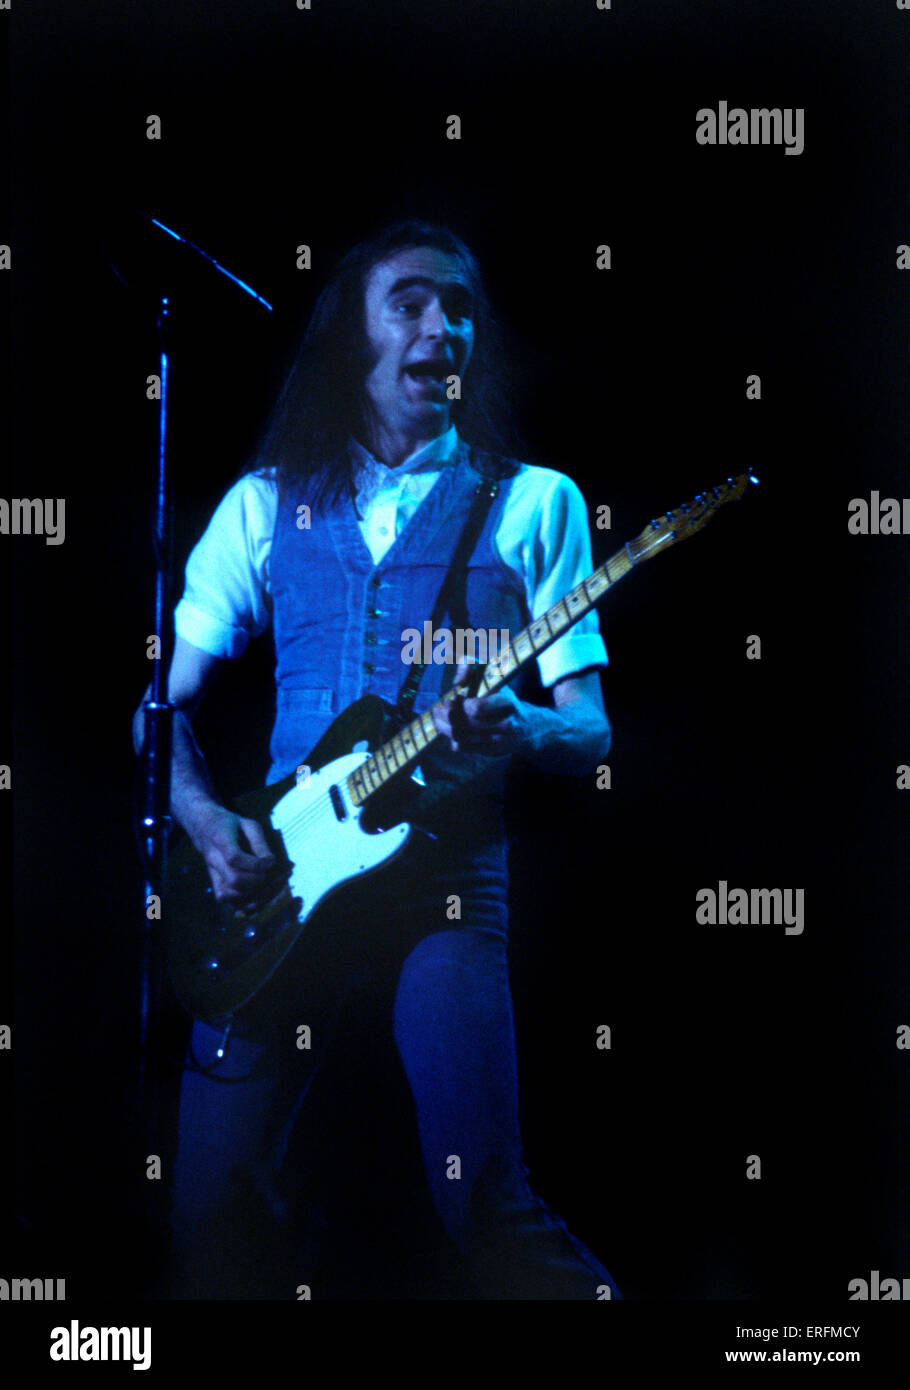 Chitarrista solista immagini e fotografie stock ad alta risoluzione - Alamy